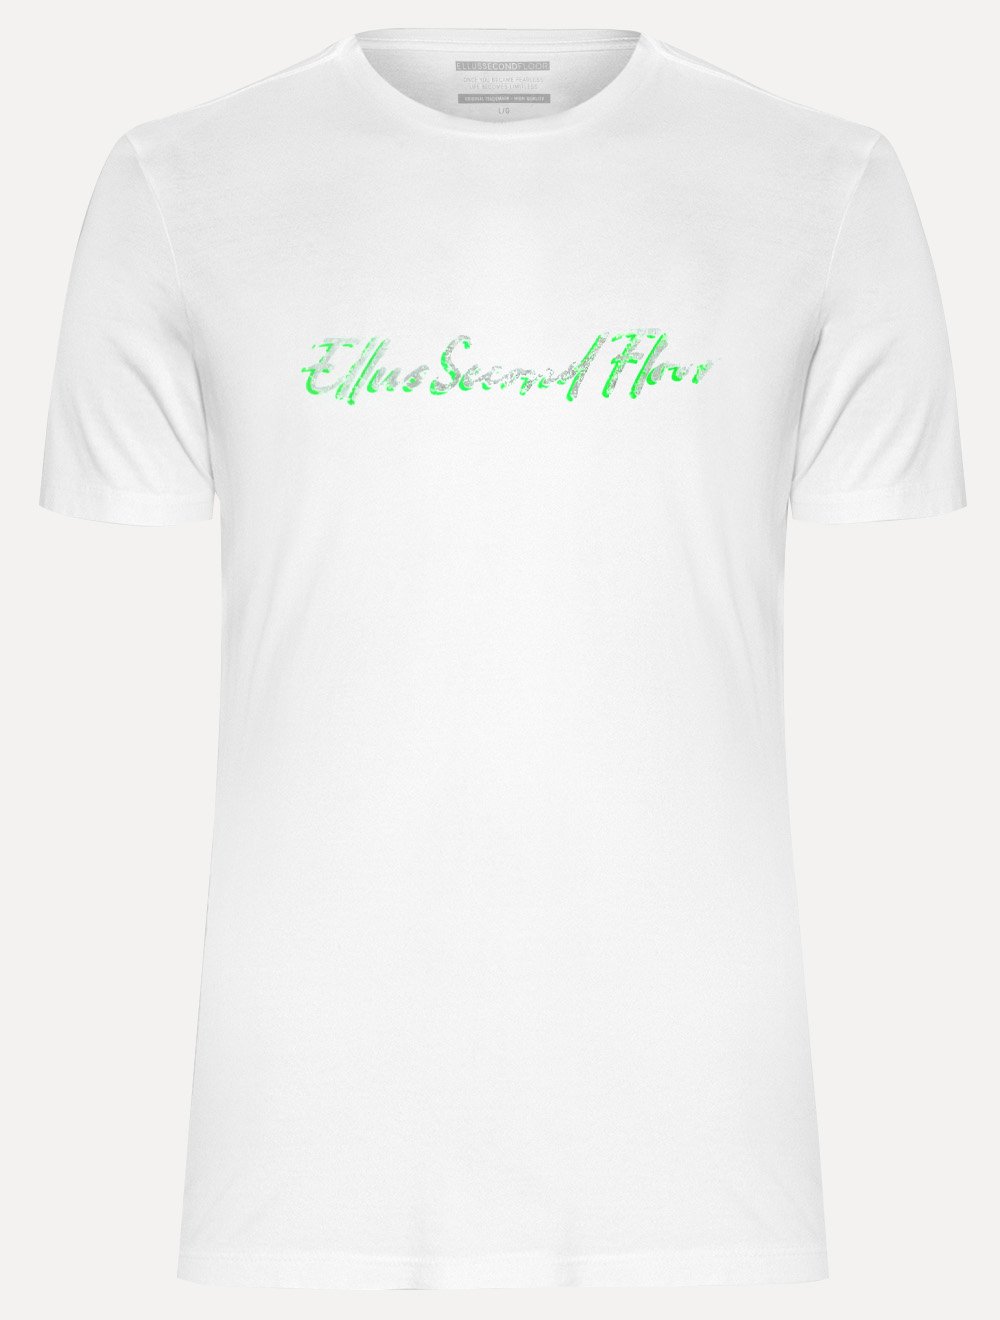 Camiseta Ellus Cotton Fine 2nd Floor Foil Classic Branca